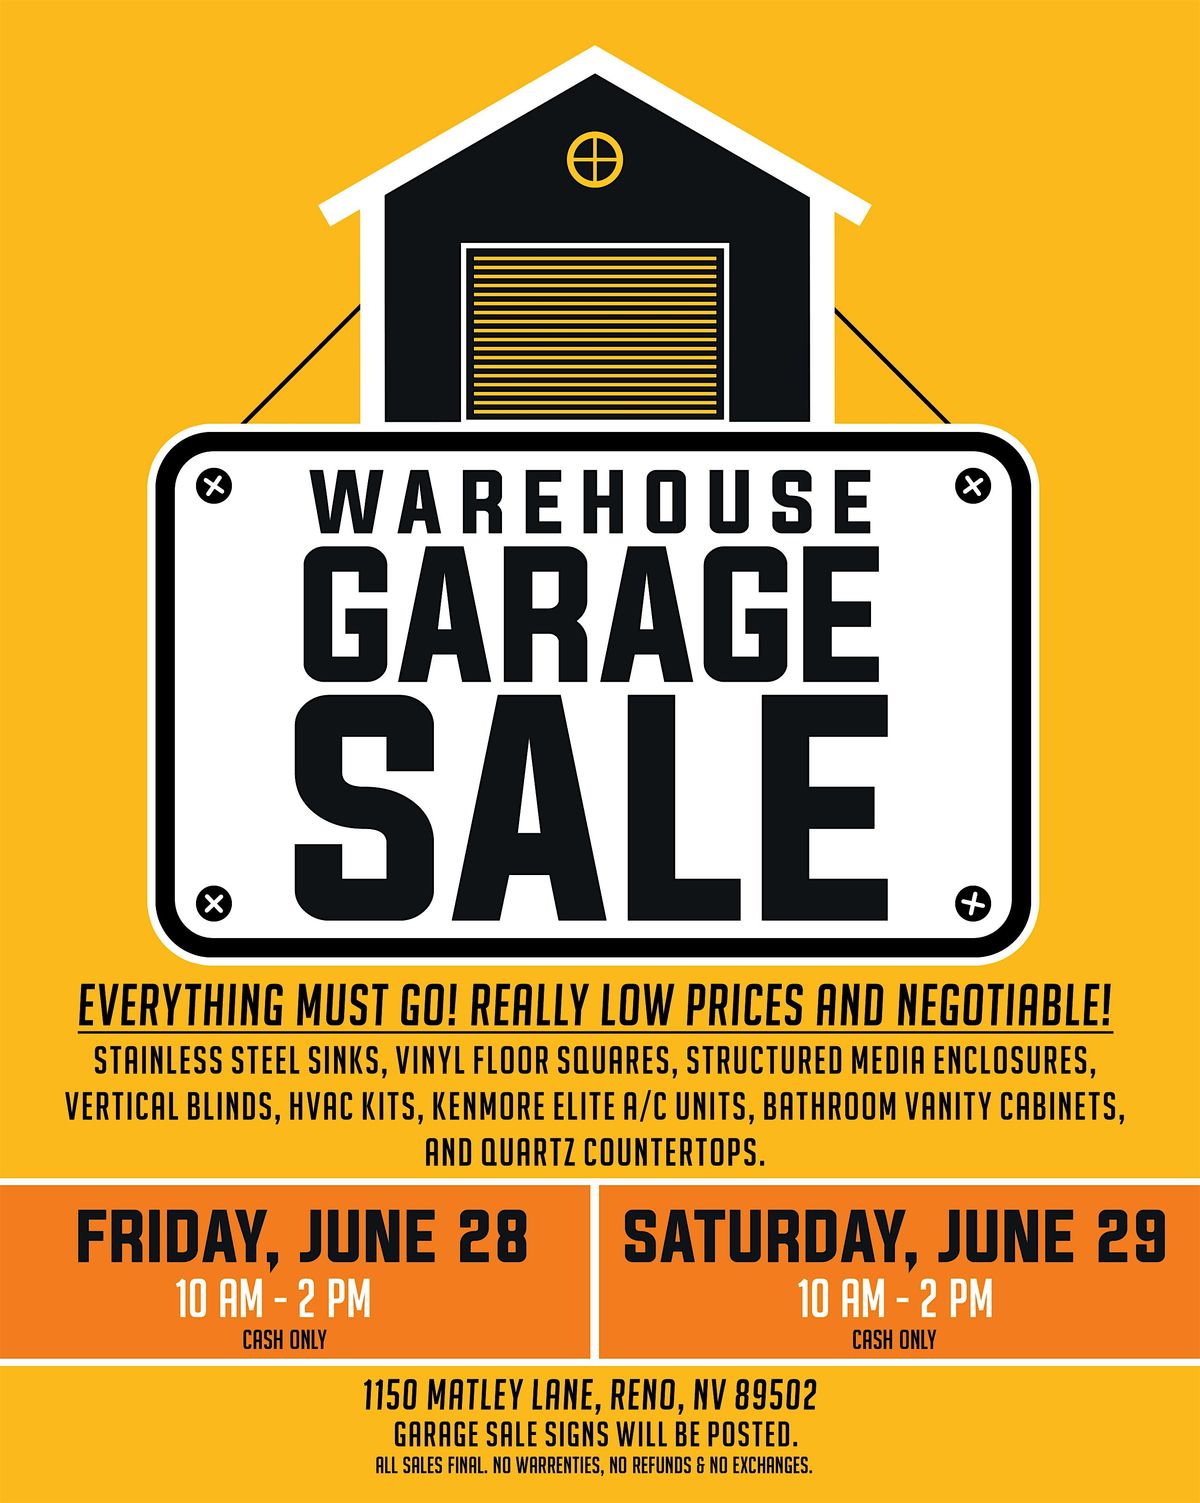 Warehouse Garage Sale!